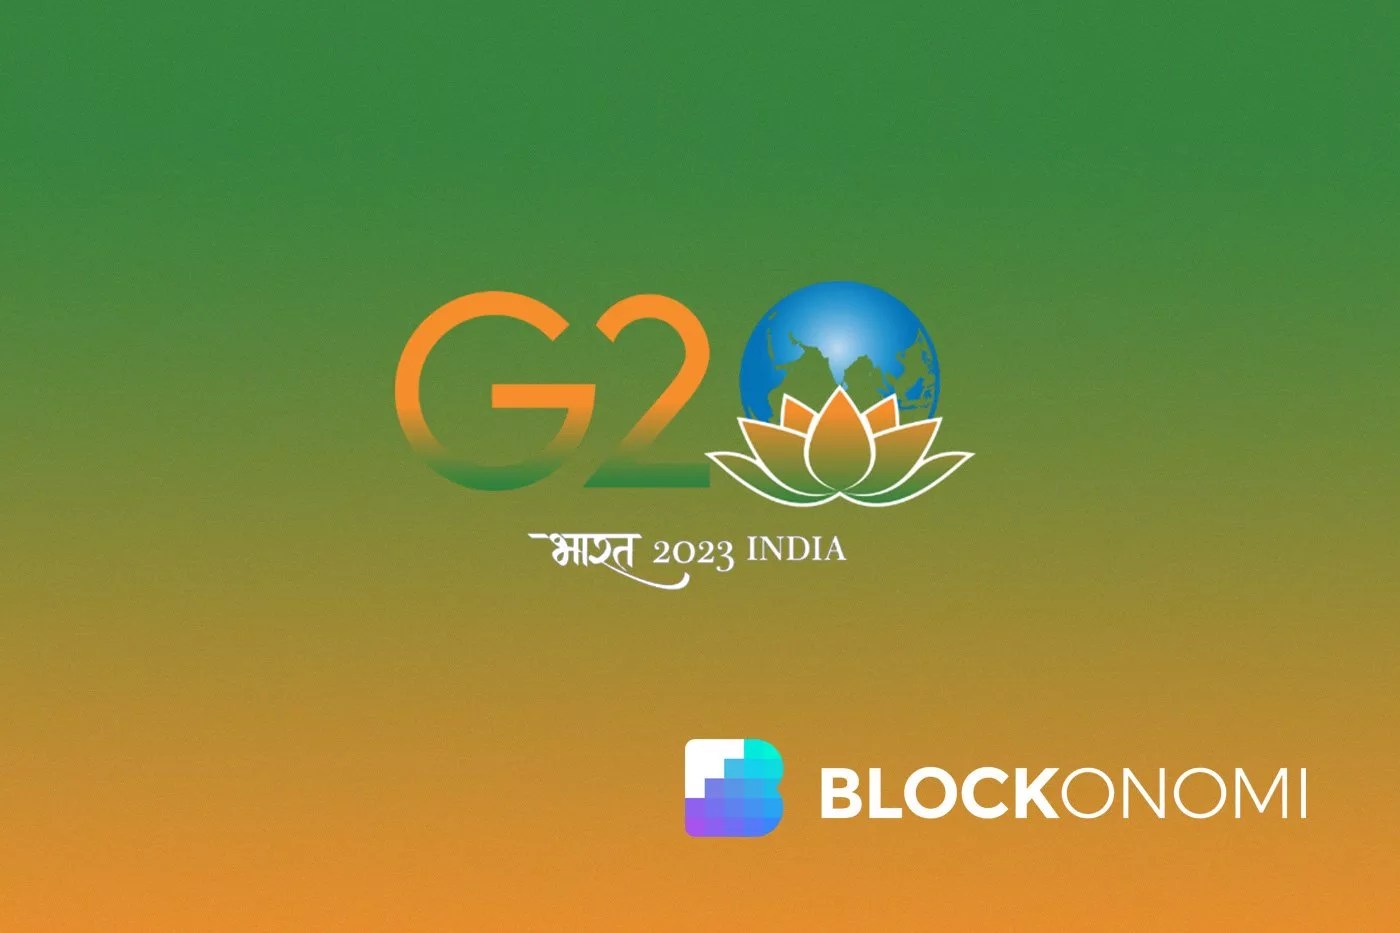 פסגת G20: הודו מחפשת איזון ברגולציית קריפטו